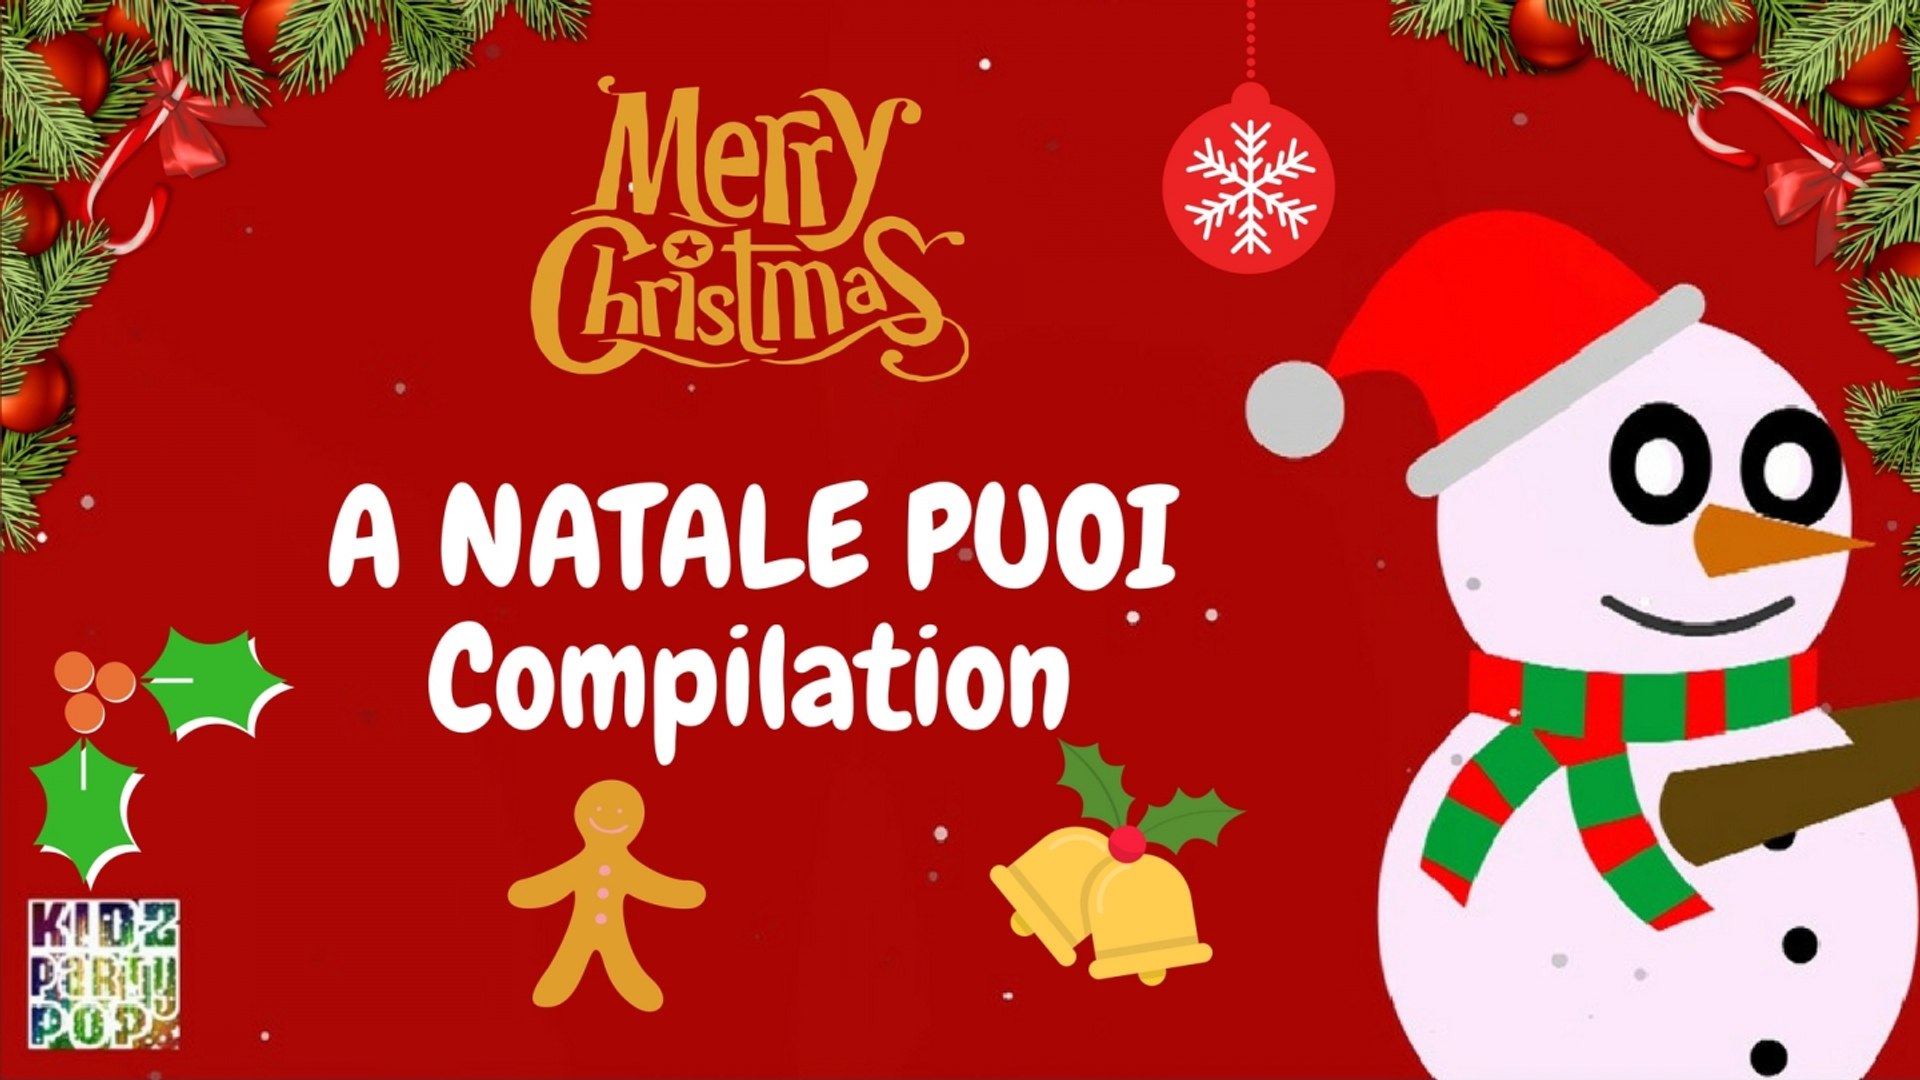 La Canzone A Natale Puoi.Le Piu Belle Canzoni Di Natale A Natale Puoi Compilation Video Dailymotion